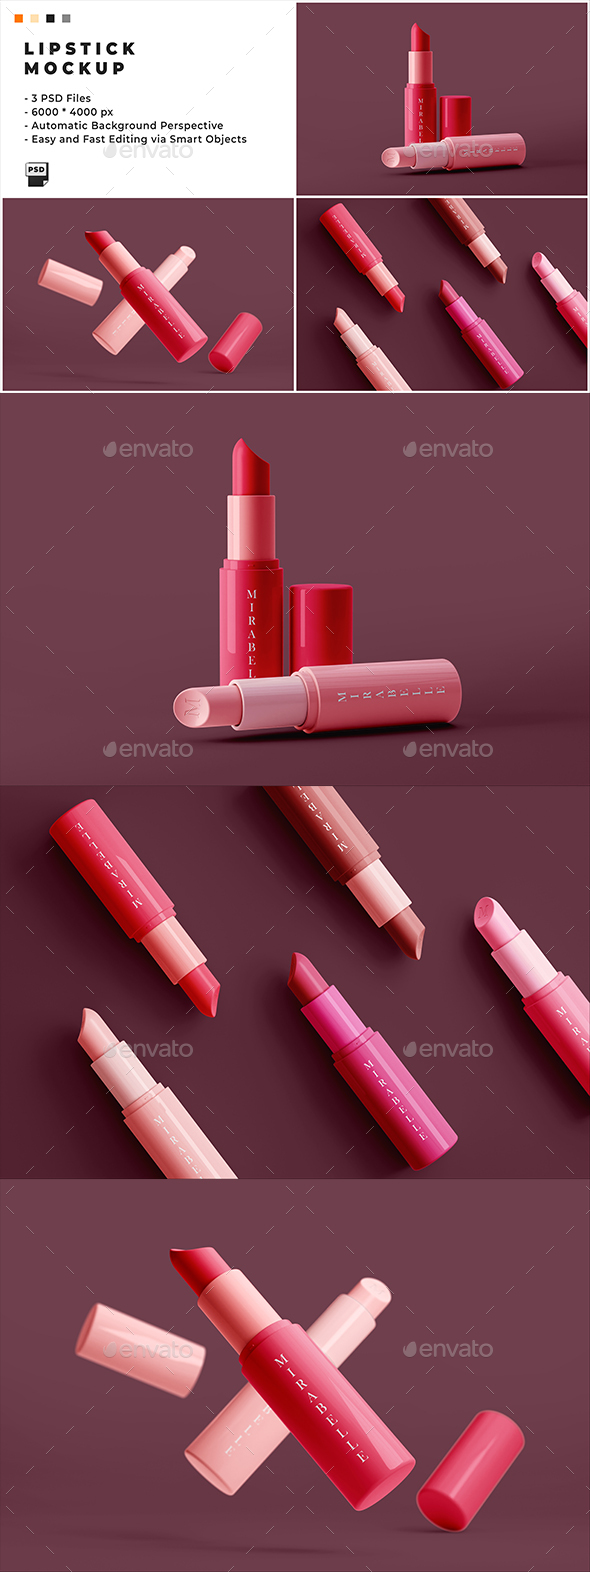 Lipstick Mockup